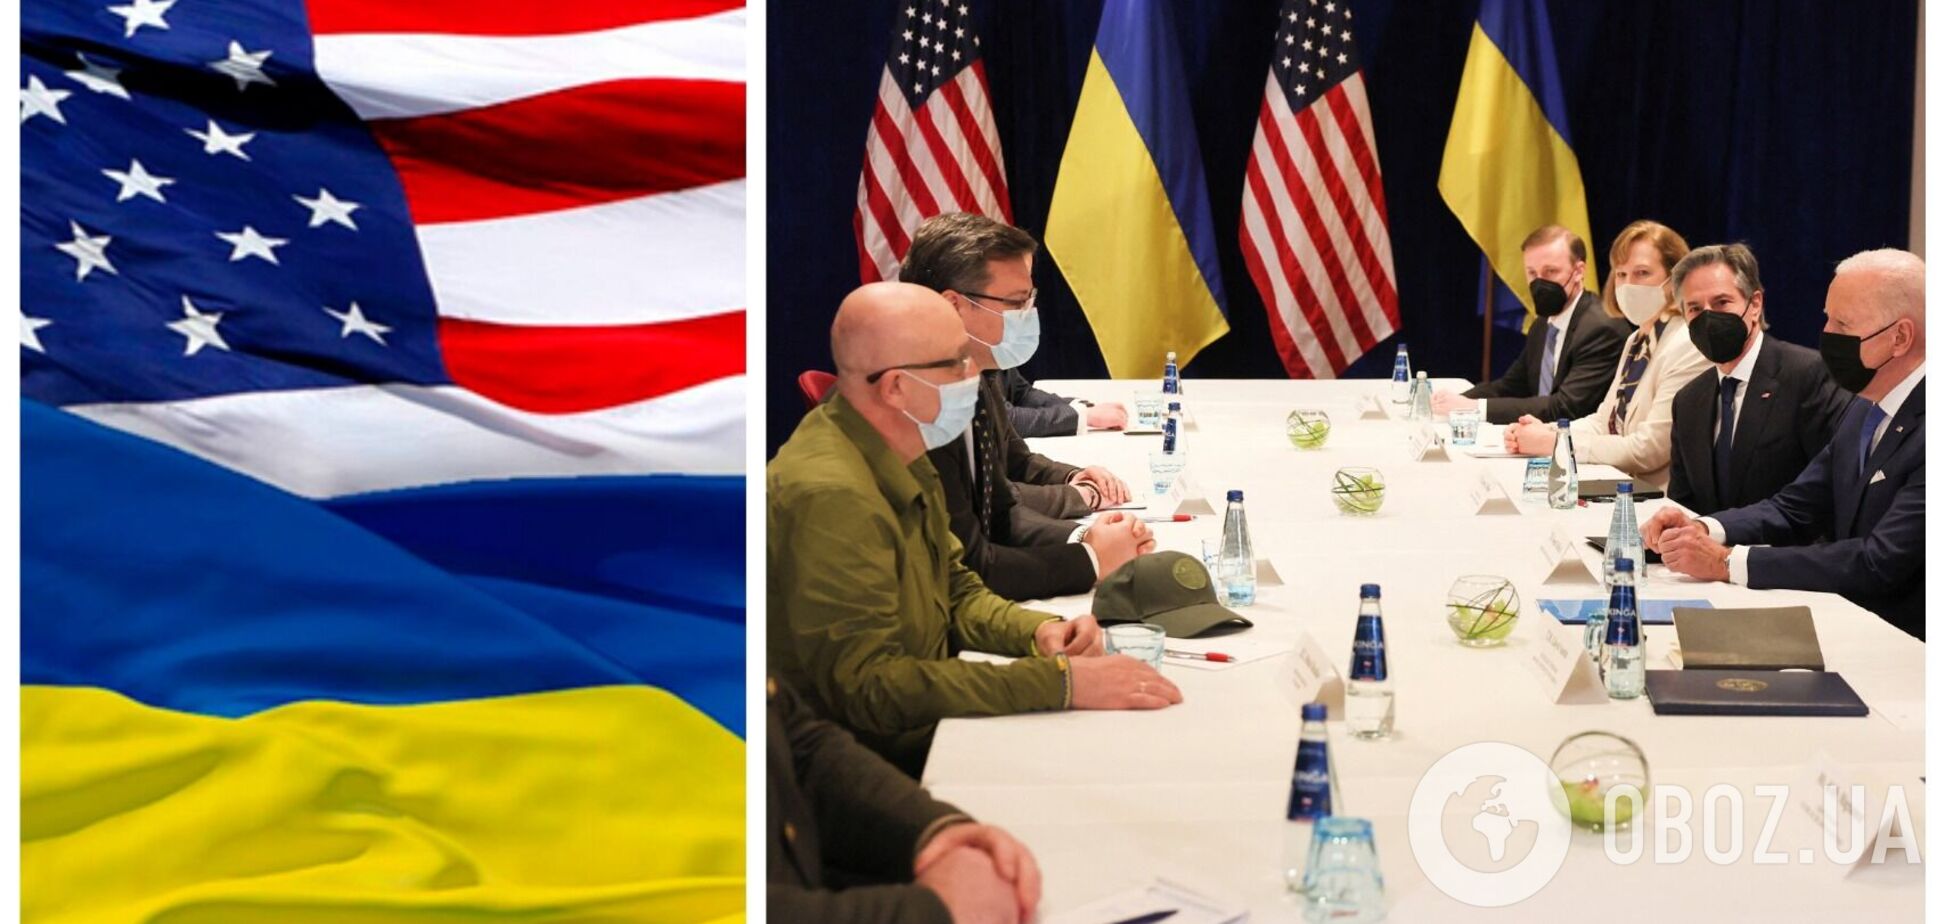 Украина и США впервые провели переговоры в формате 2+2: к встрече присоединился Байден. Все подробности